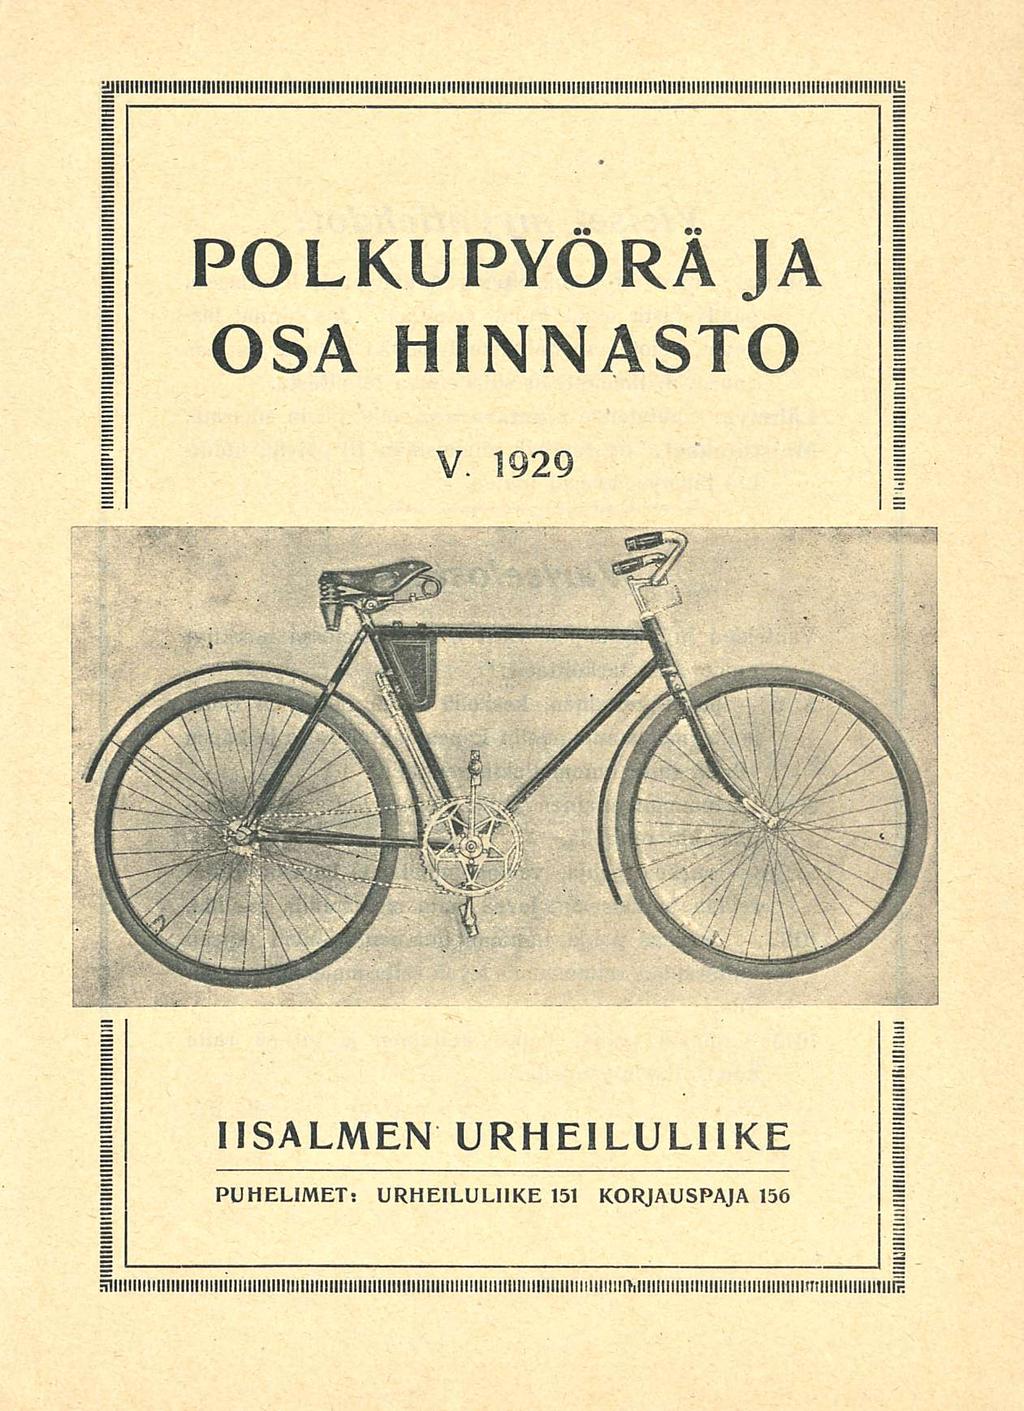 POLKUPYÖRÄ JA OSA HINNASTO V 1929 IISALMEN